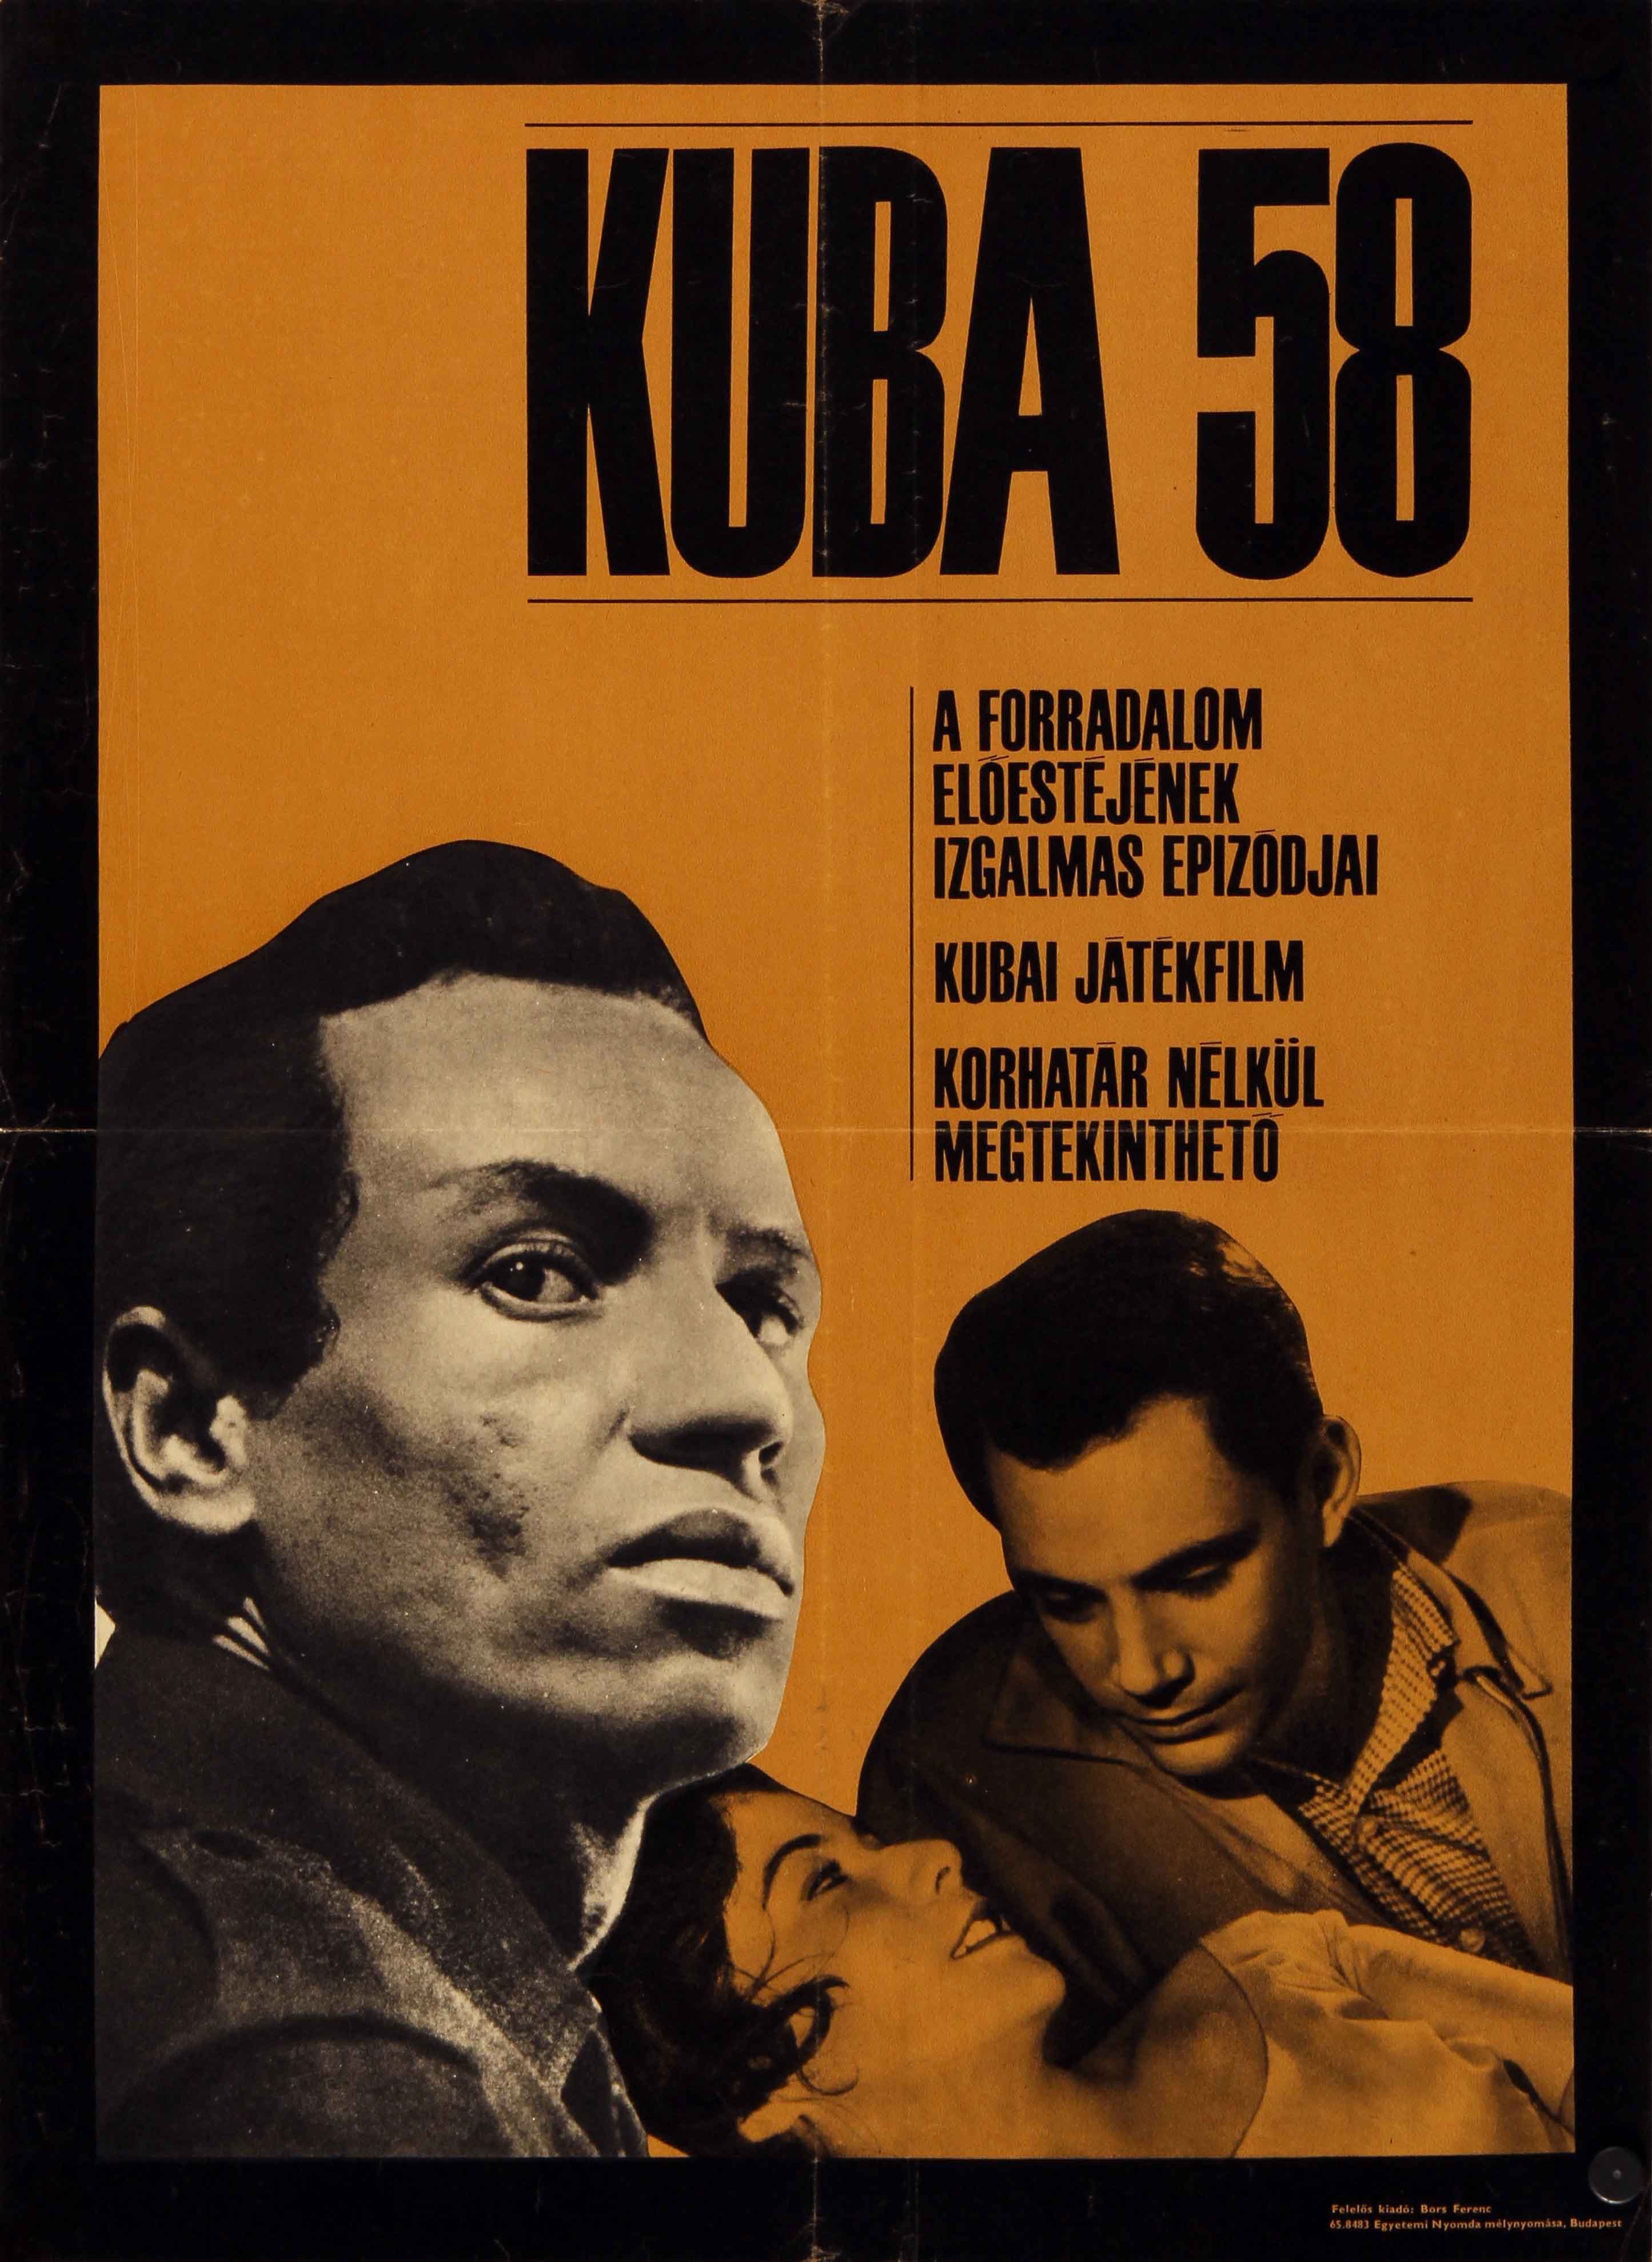 Cuba '58